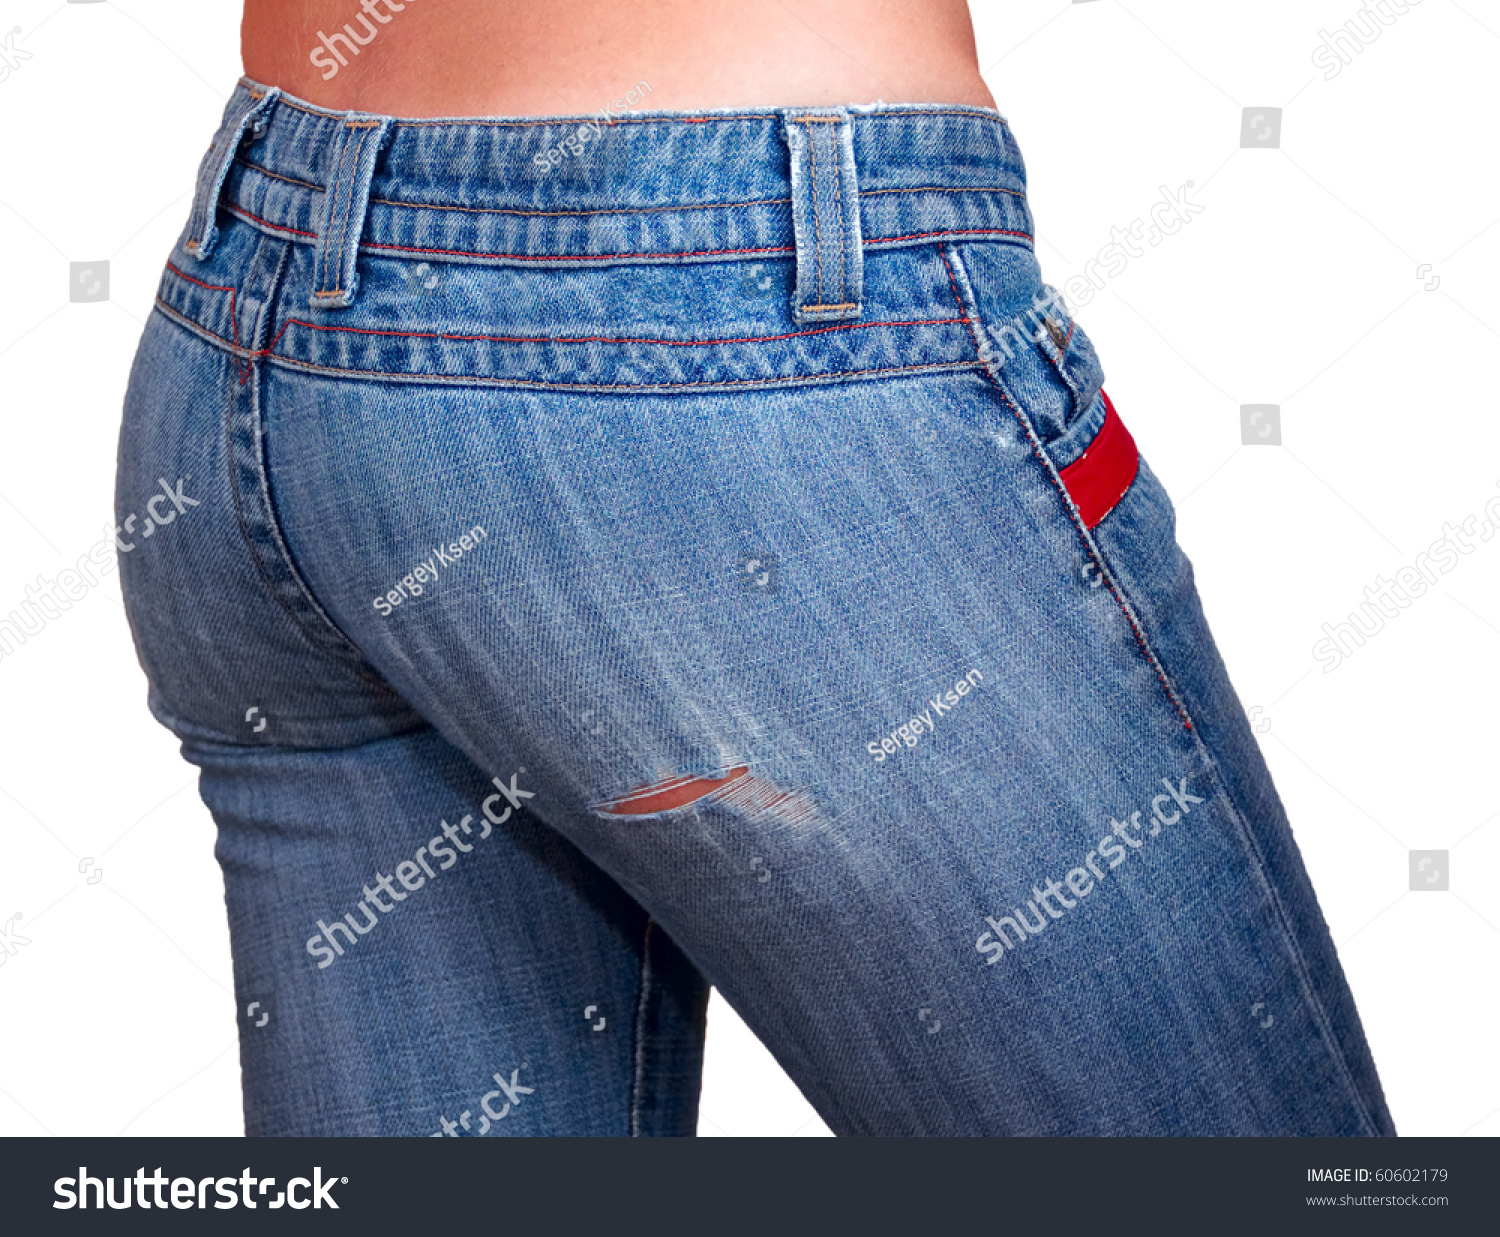 Girls Back Hips Jeans On White Stock Photo 60602179 - Shutterstock